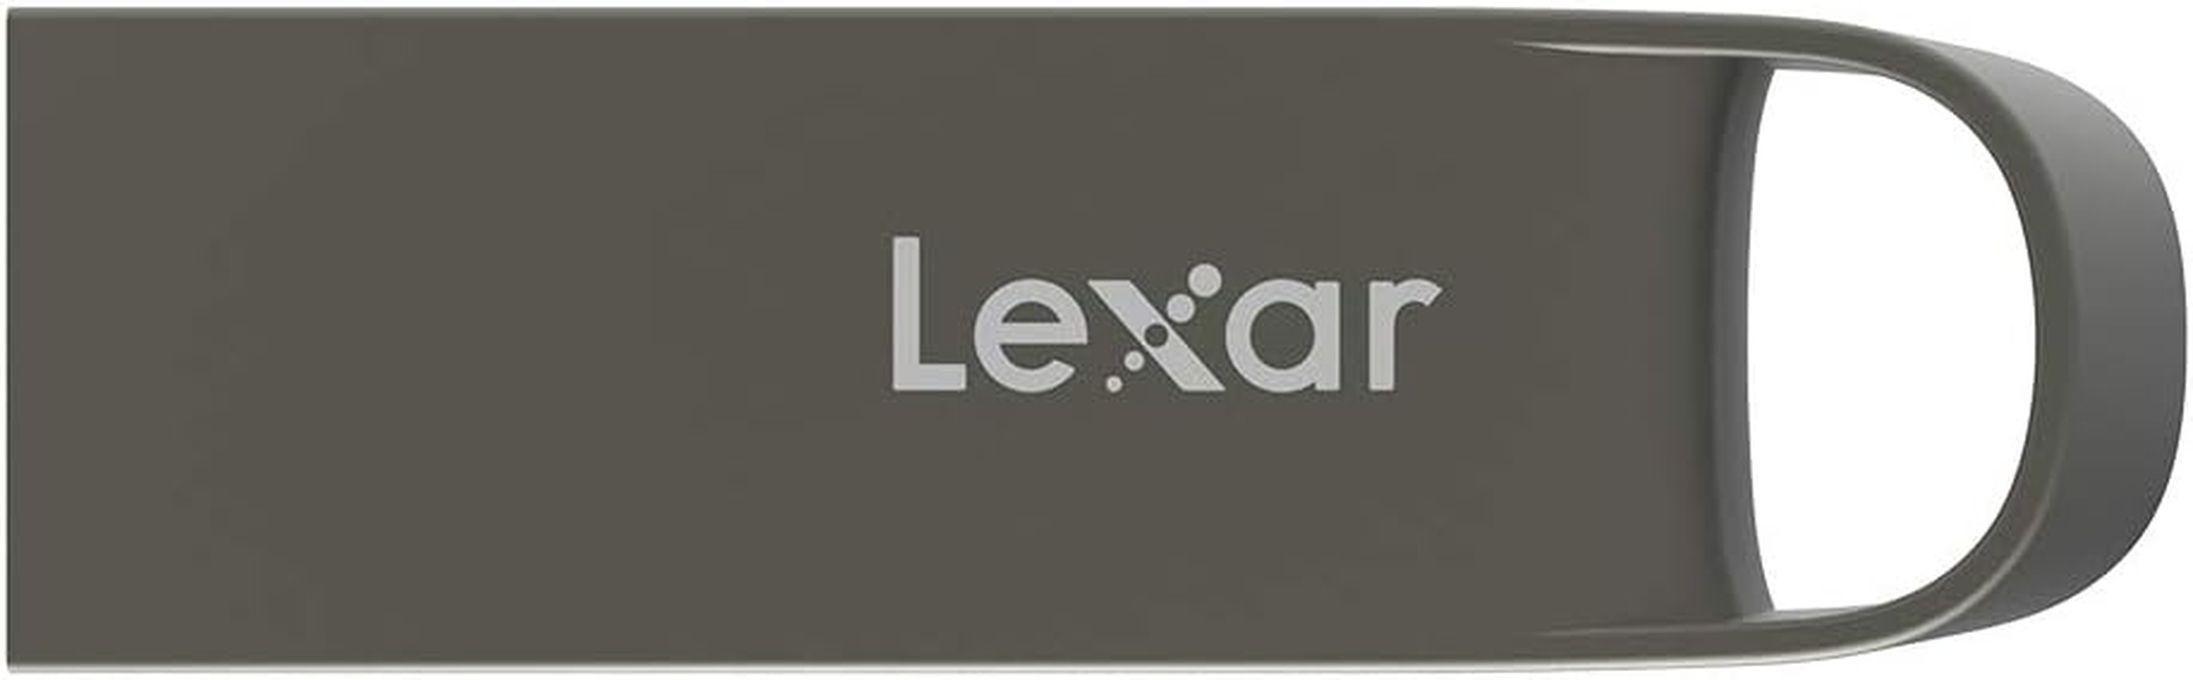 Lexar محرك أقراص فلاش ليكسر 16 جيجابايت USB 2.0، عصا USB صغيرة،